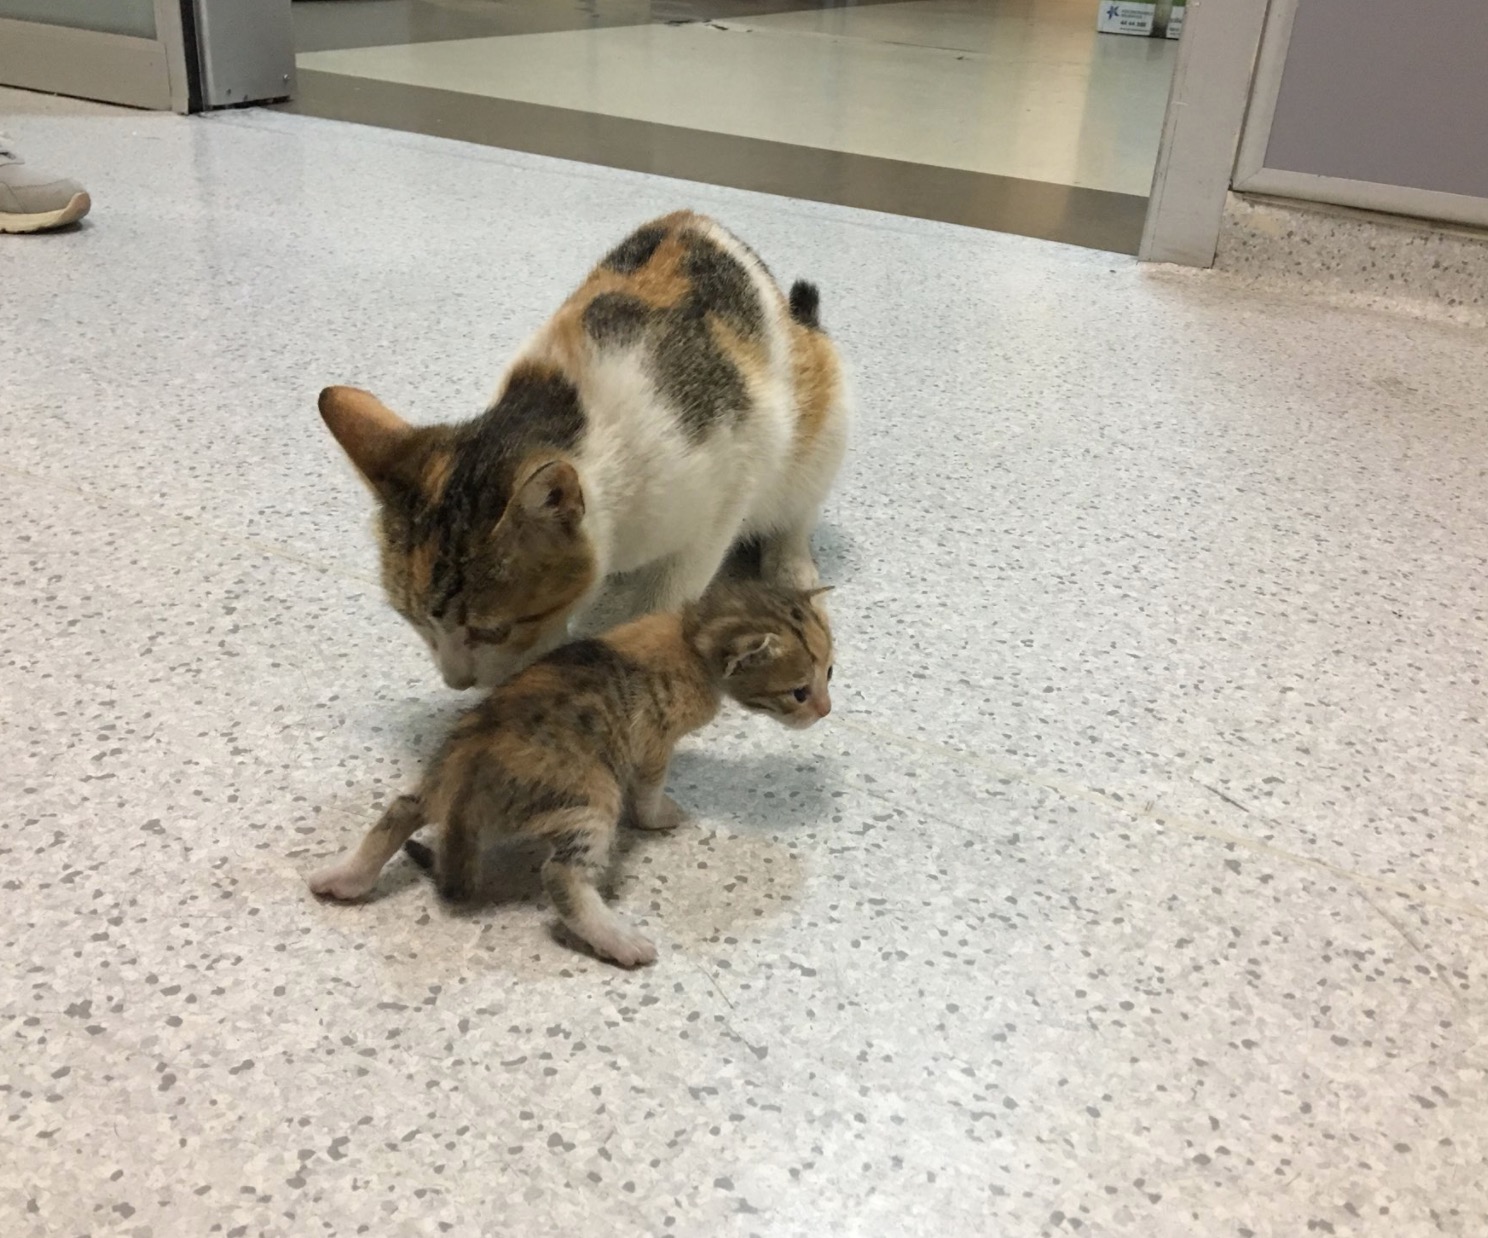 sajagempak.com - Kisah Sebenar Ibu Kucing Bawa Anak Ke Hospital Seolah-olah Meminta Pertolongan